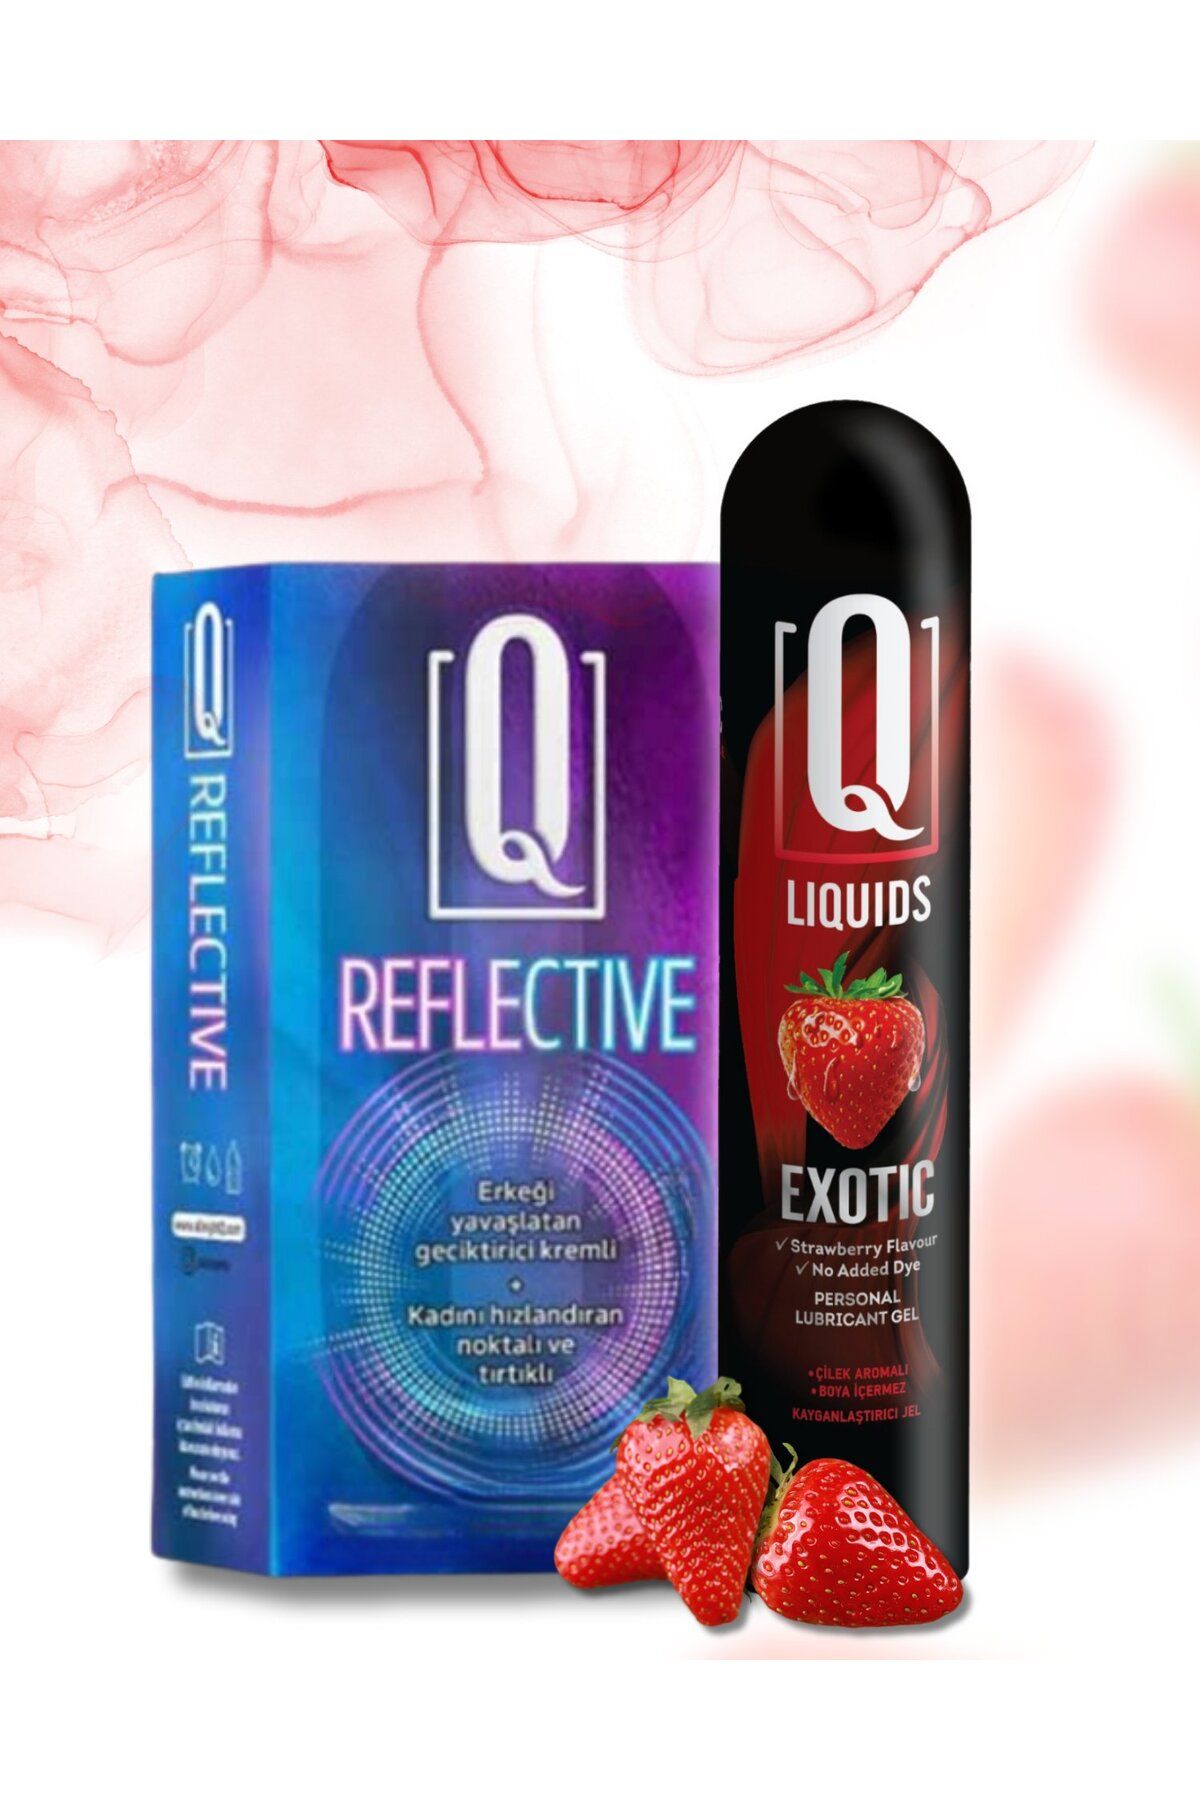 Q LIQUIDS 12 Adet Geçiktiricili ve Kabartmalı Prezervatif 125ml Çilek Aromalı Kayganlaştırıcı Hediyeli